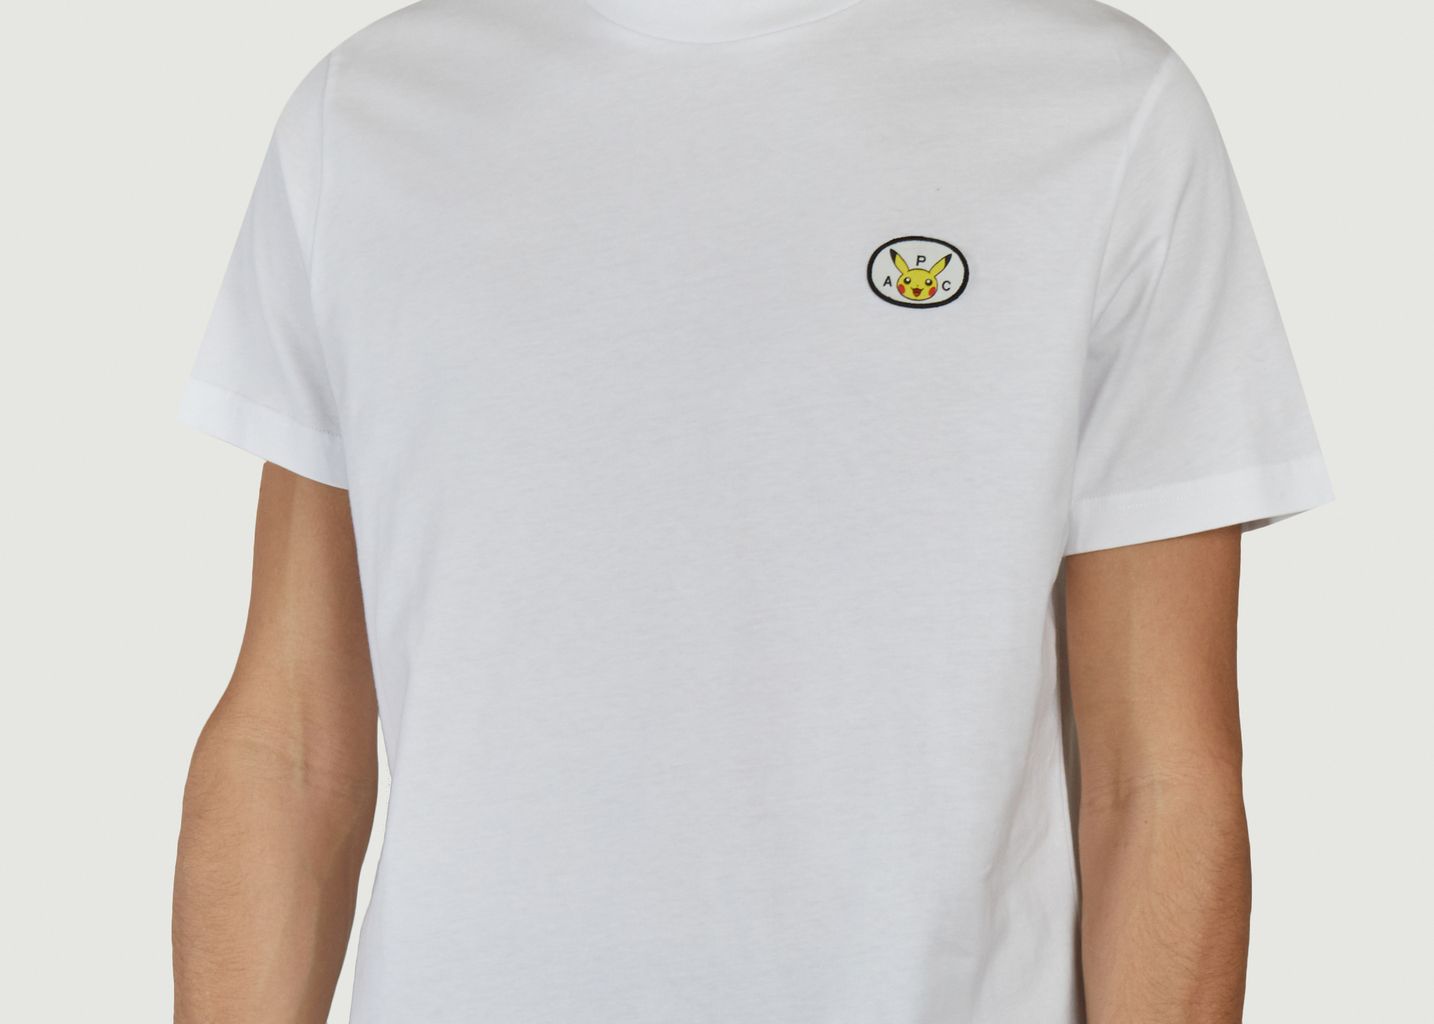 T-shirt with Pikachu patch Pokémon x A.P.C. - A.P.C.